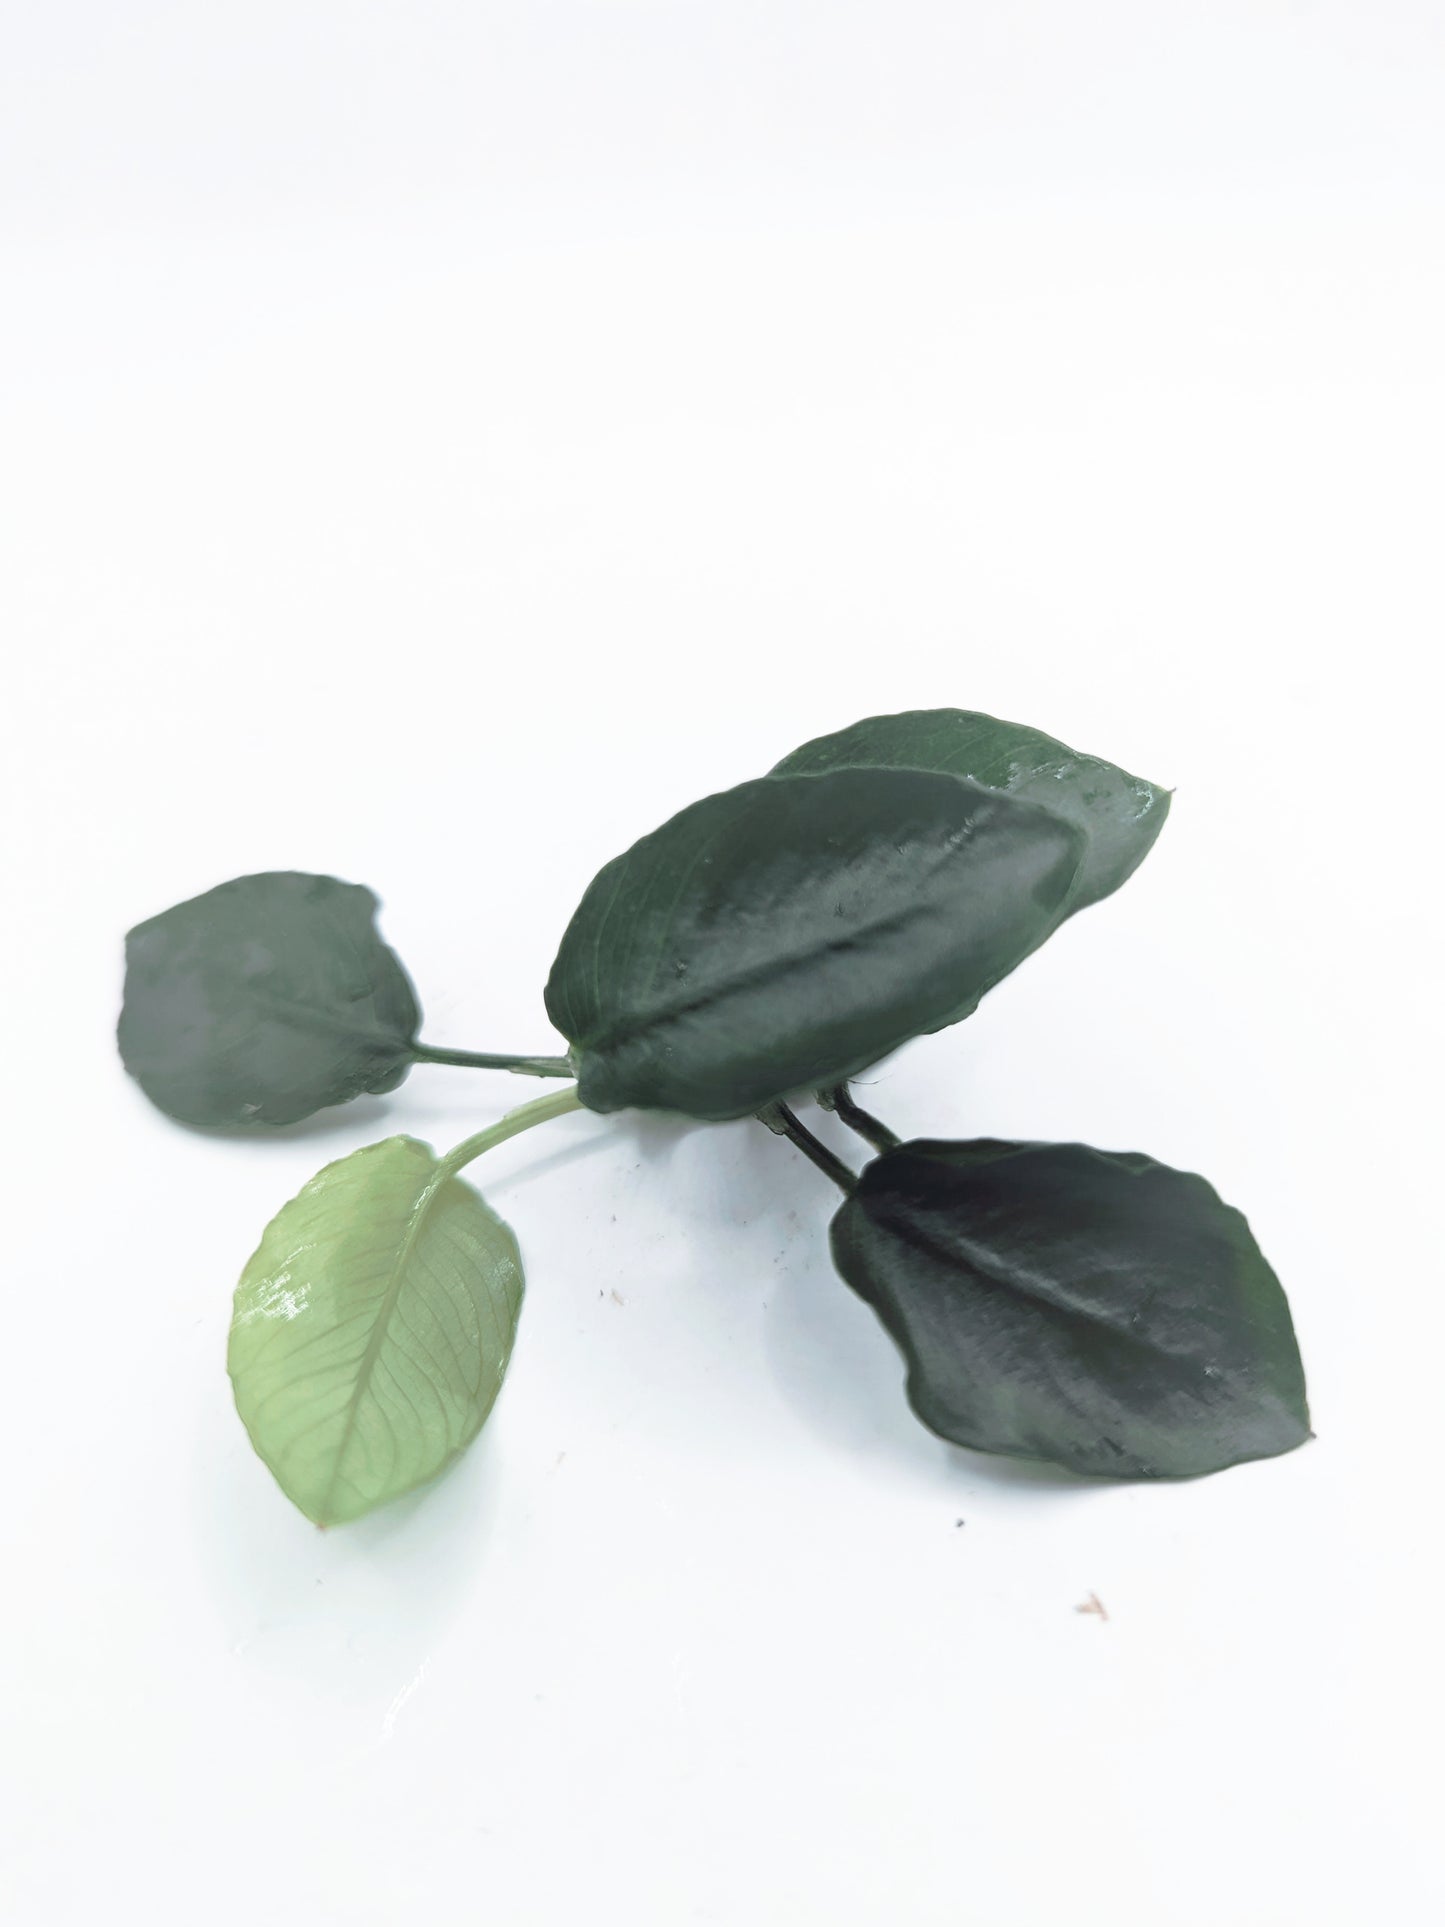 Anubias nana long wavy (one rhizome)